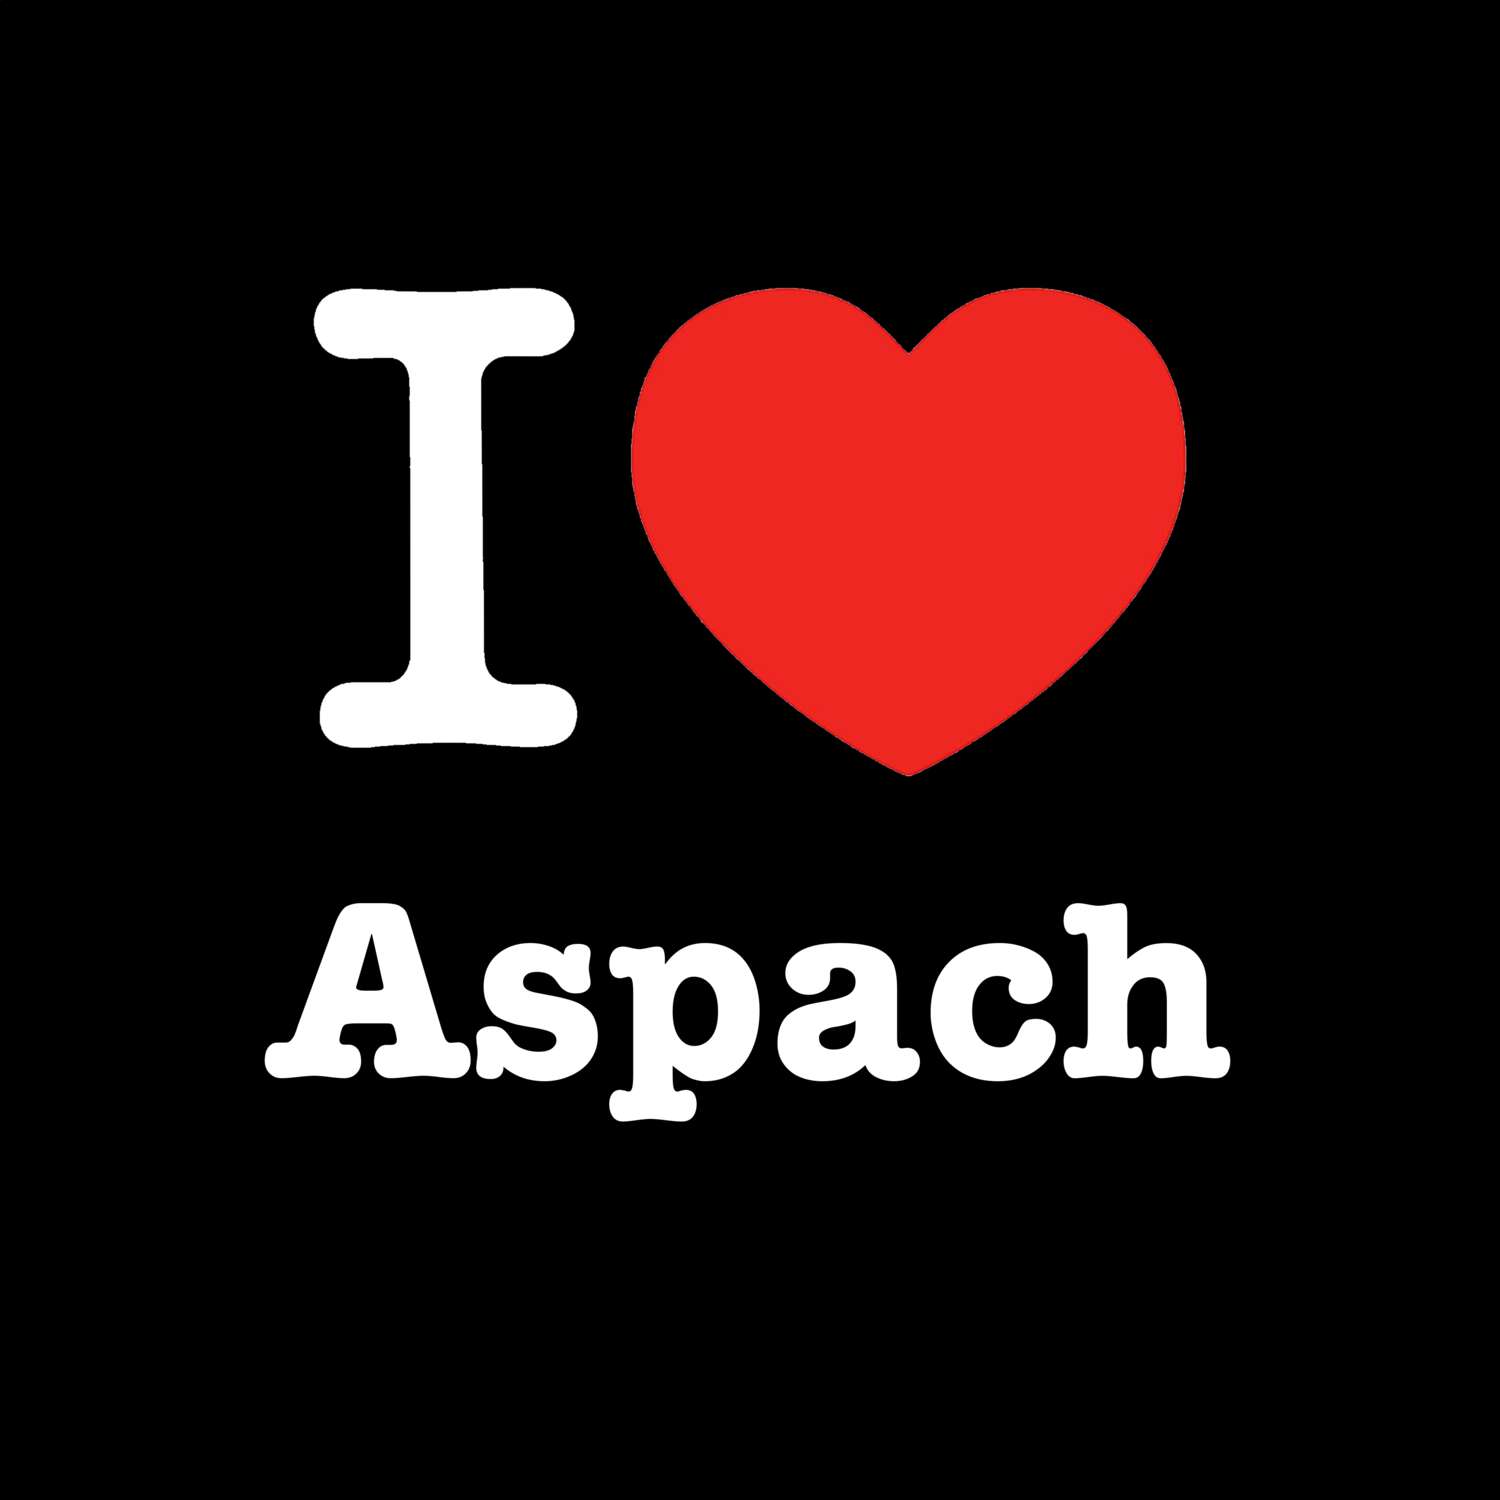 Aspach T-Shirt »I love«